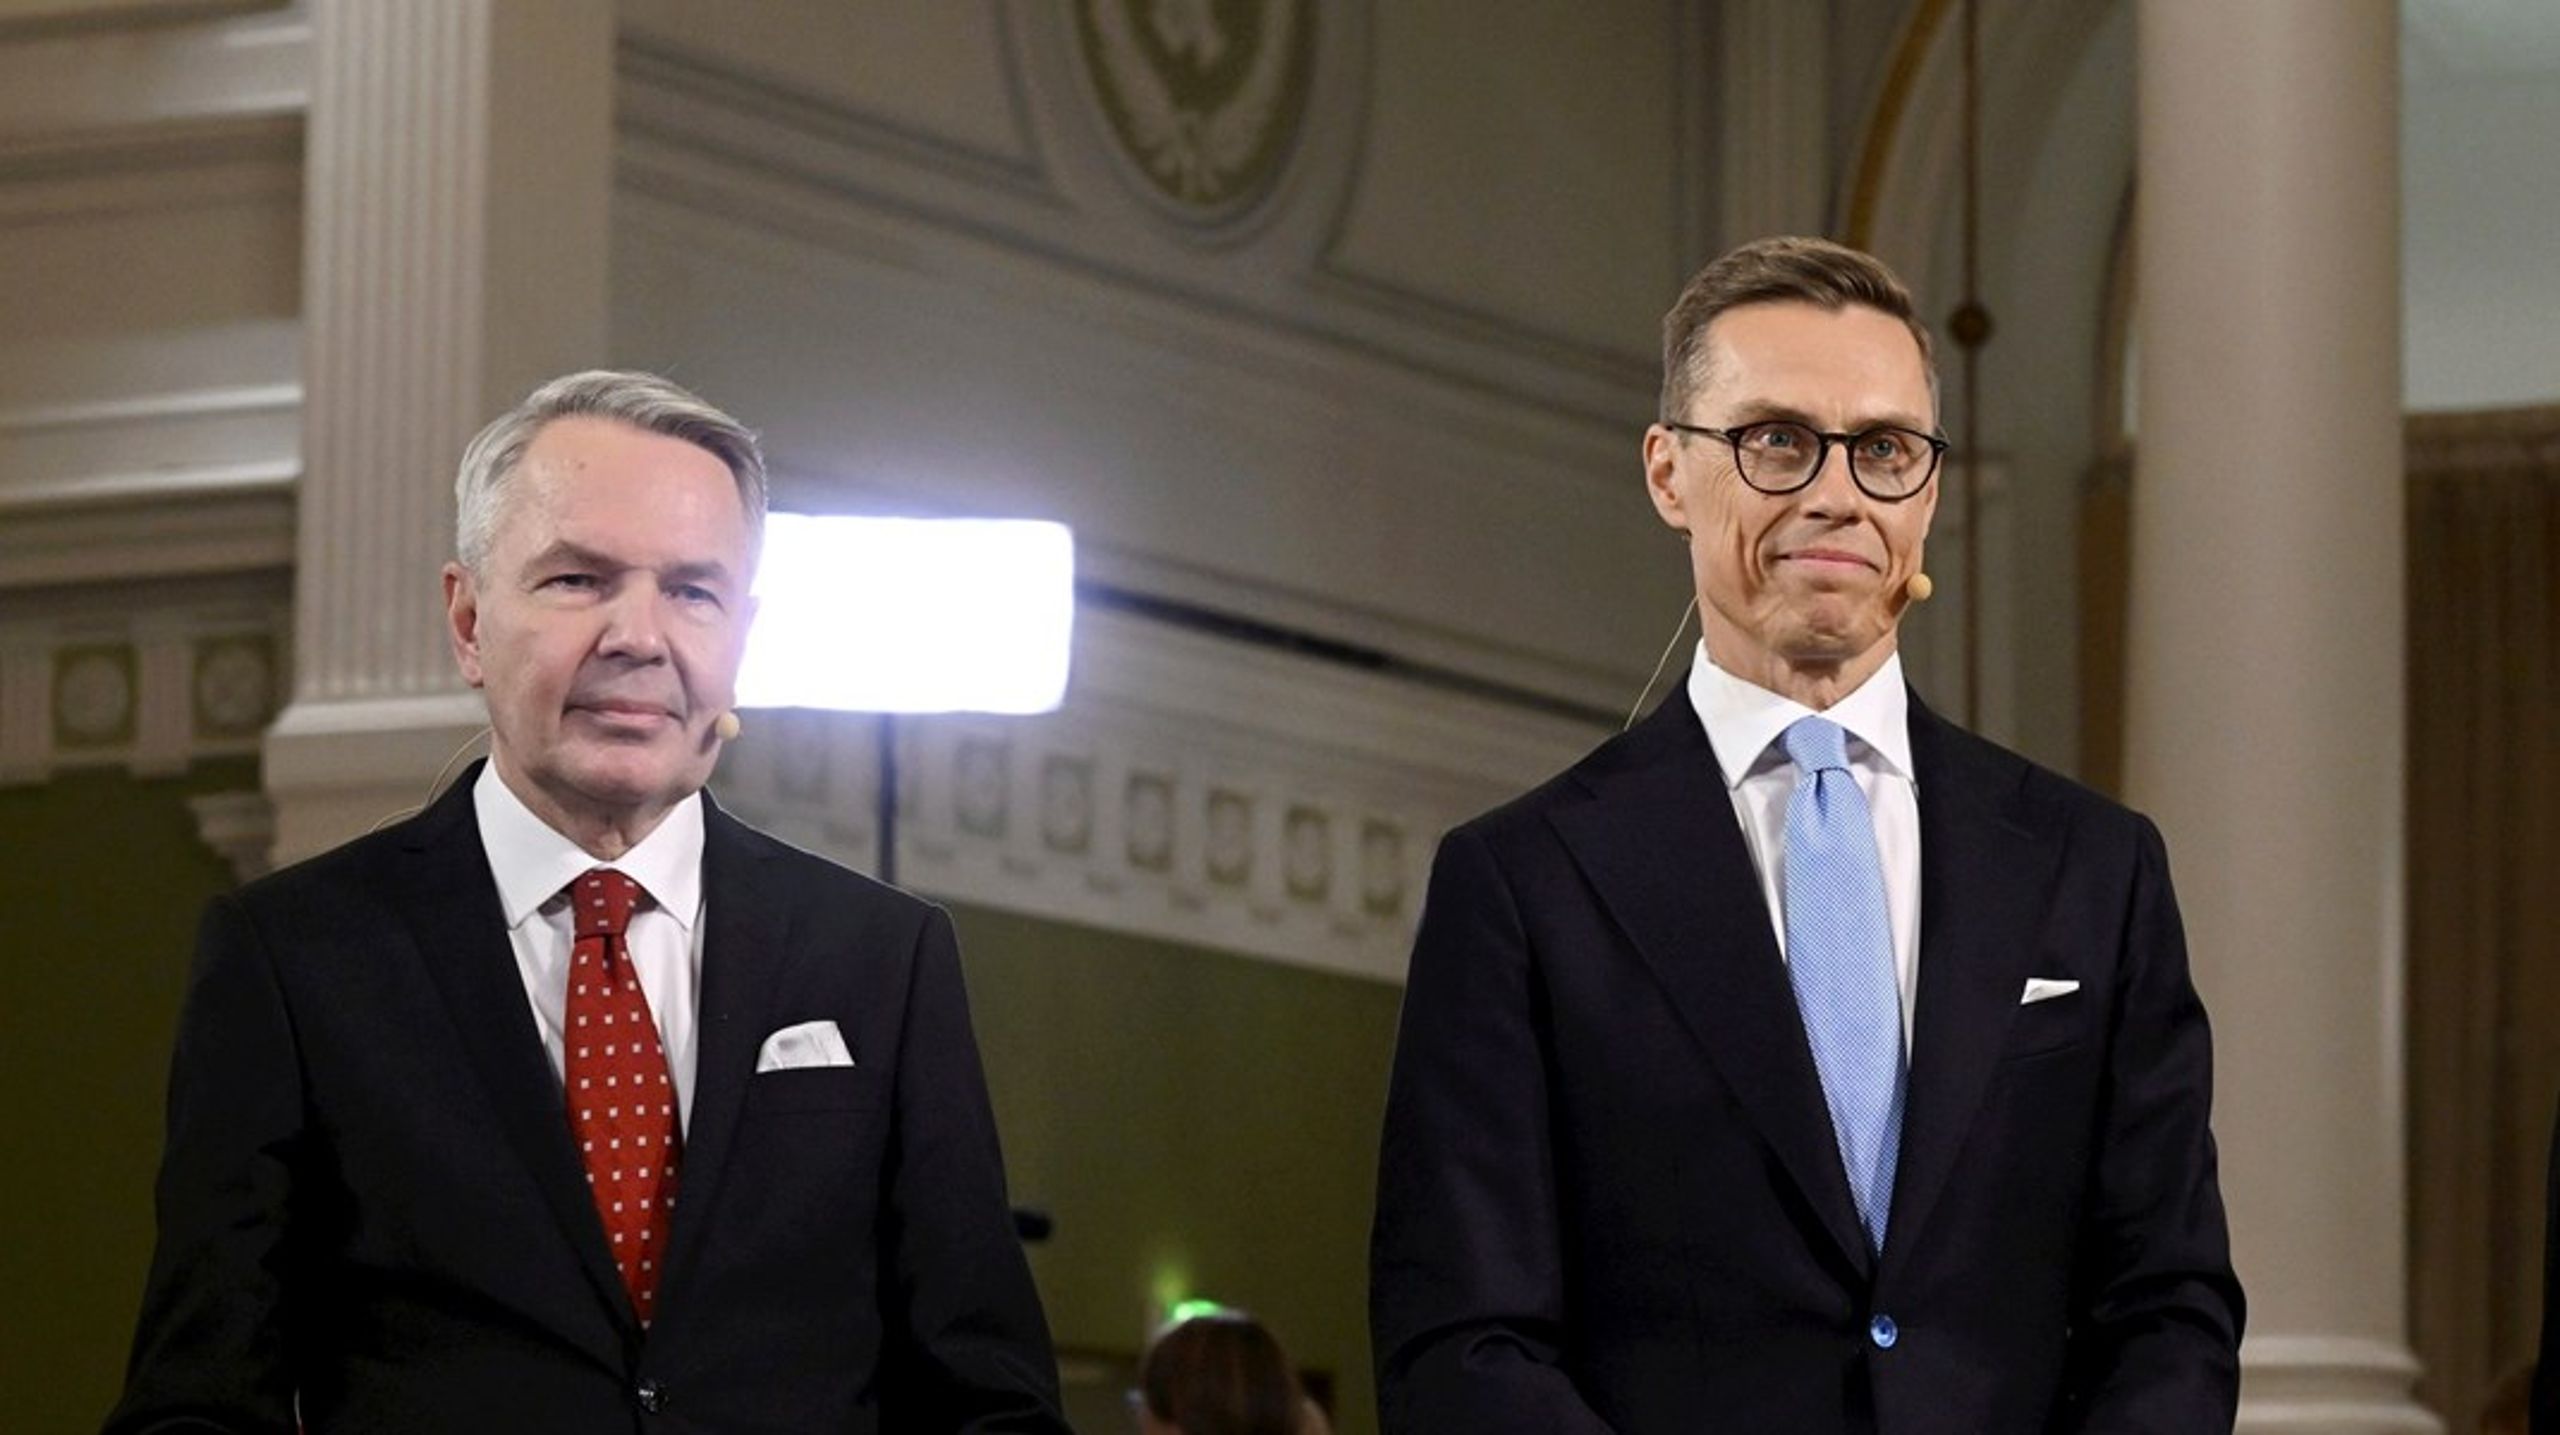 Pekka Haavisto och Alexander Stubb går vidare till den andra valomgången i det finska presidentvalet.